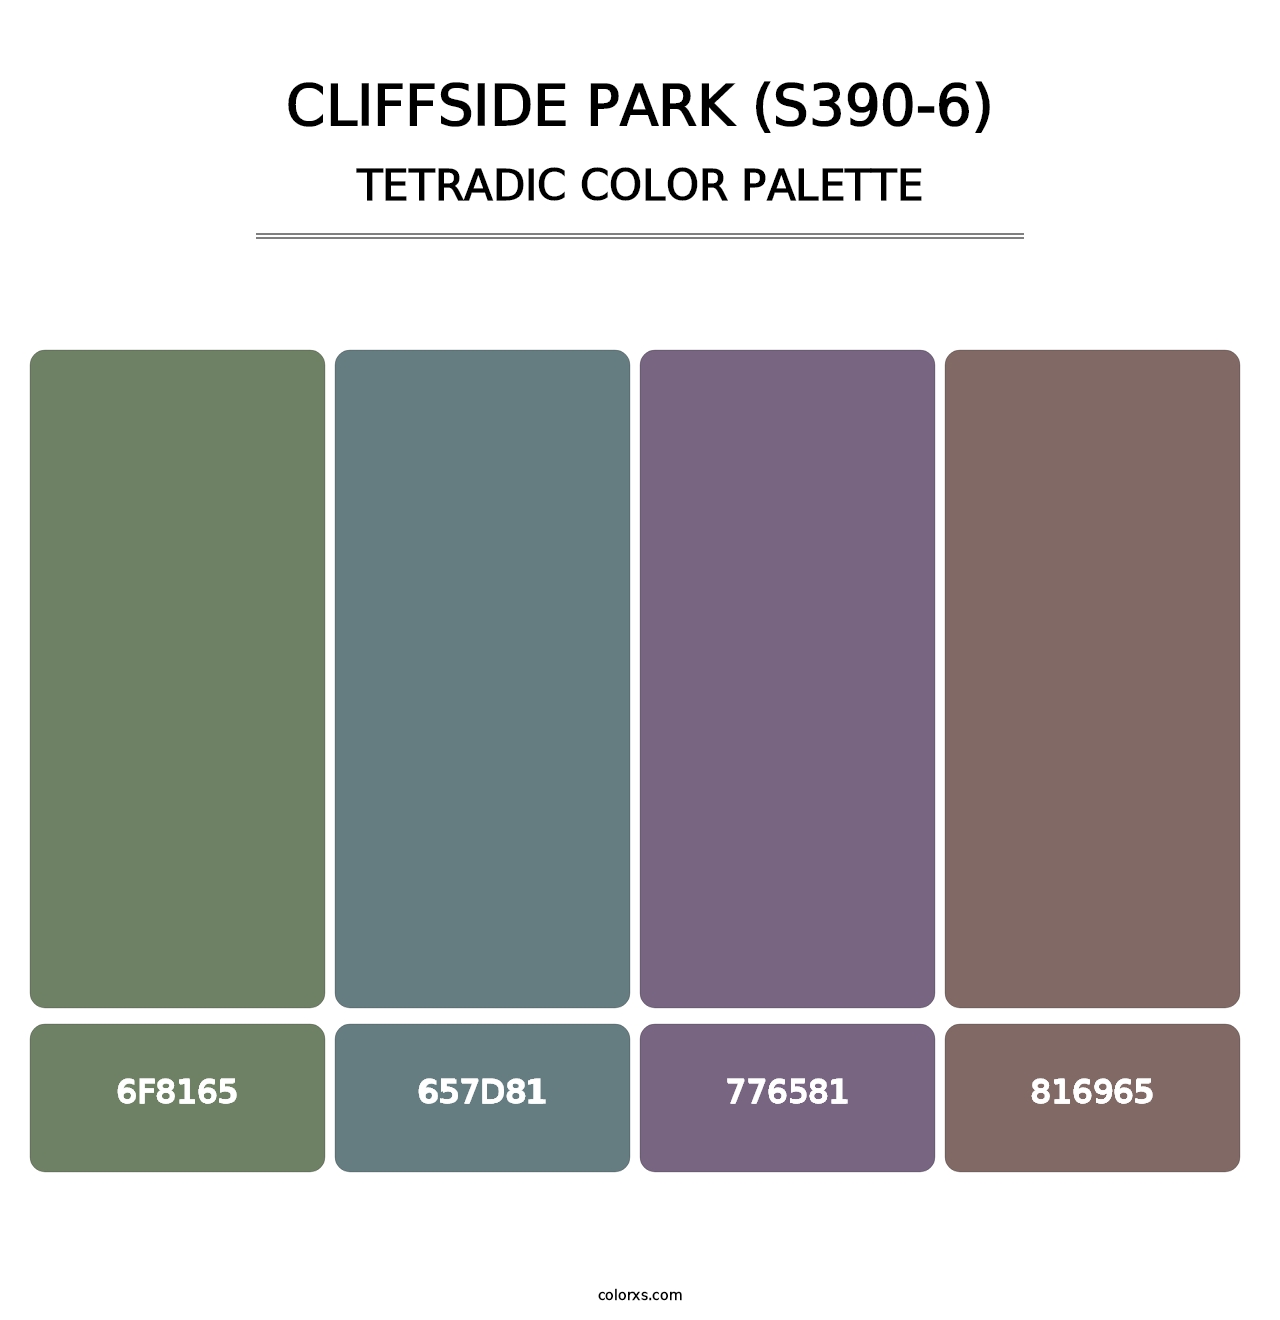 Cliffside Park (S390-6) - Tetradic Color Palette